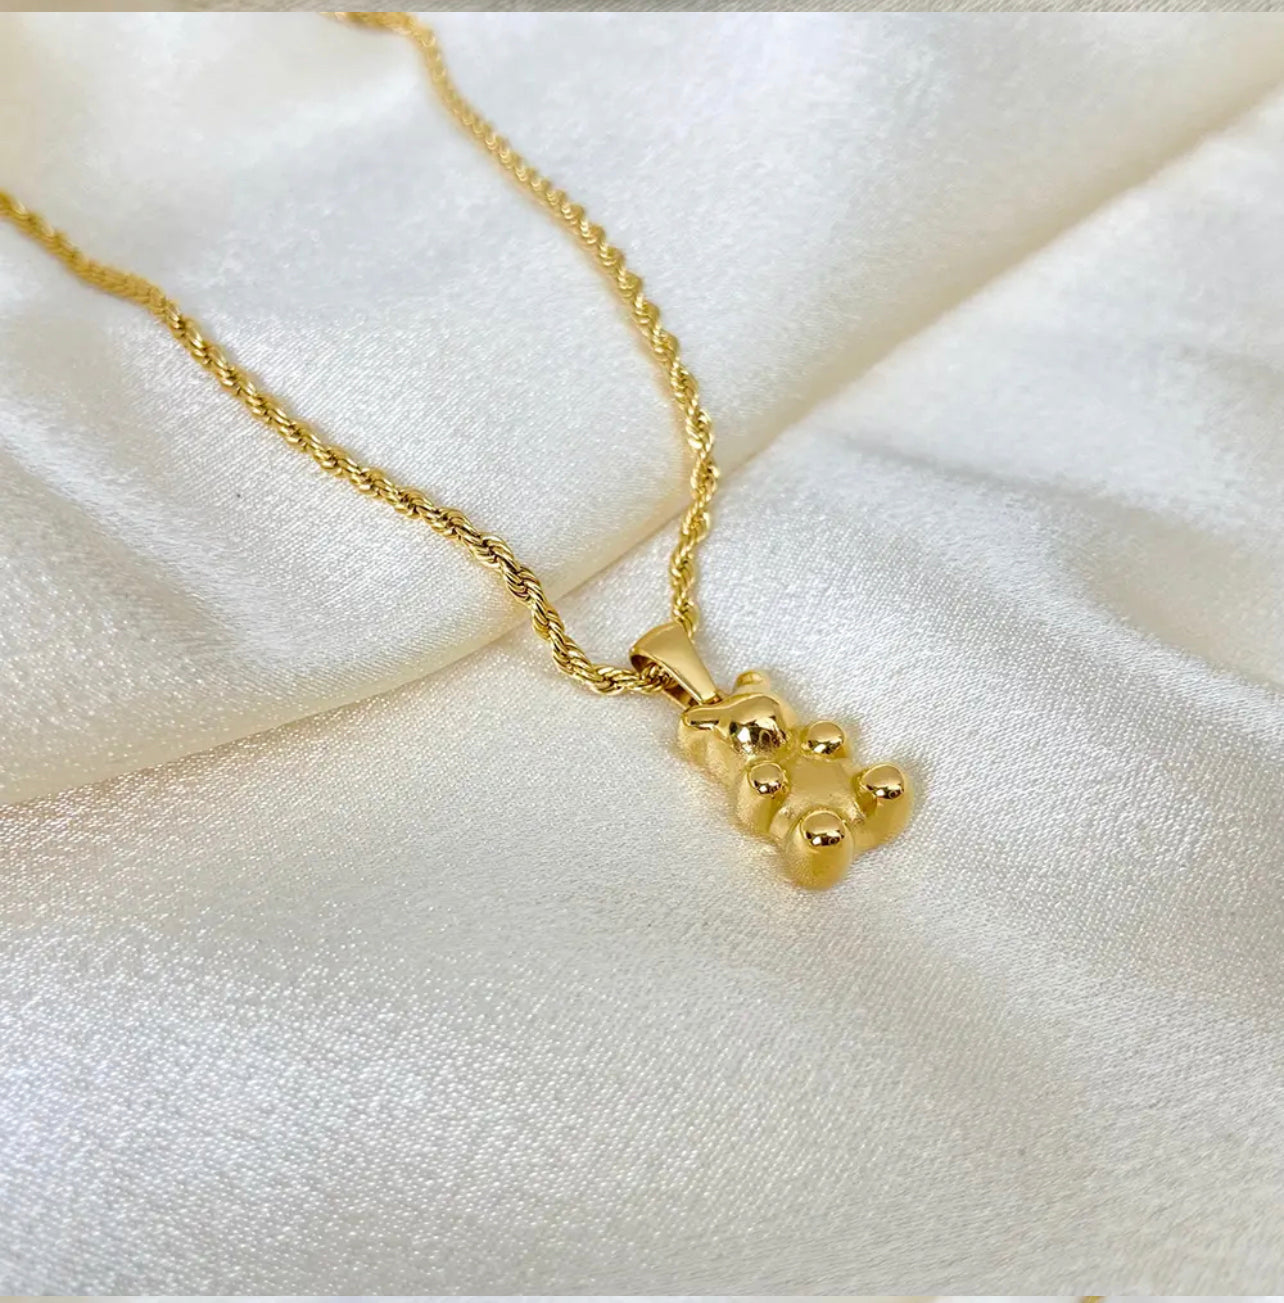 Little bear pendant necklace plain gold design